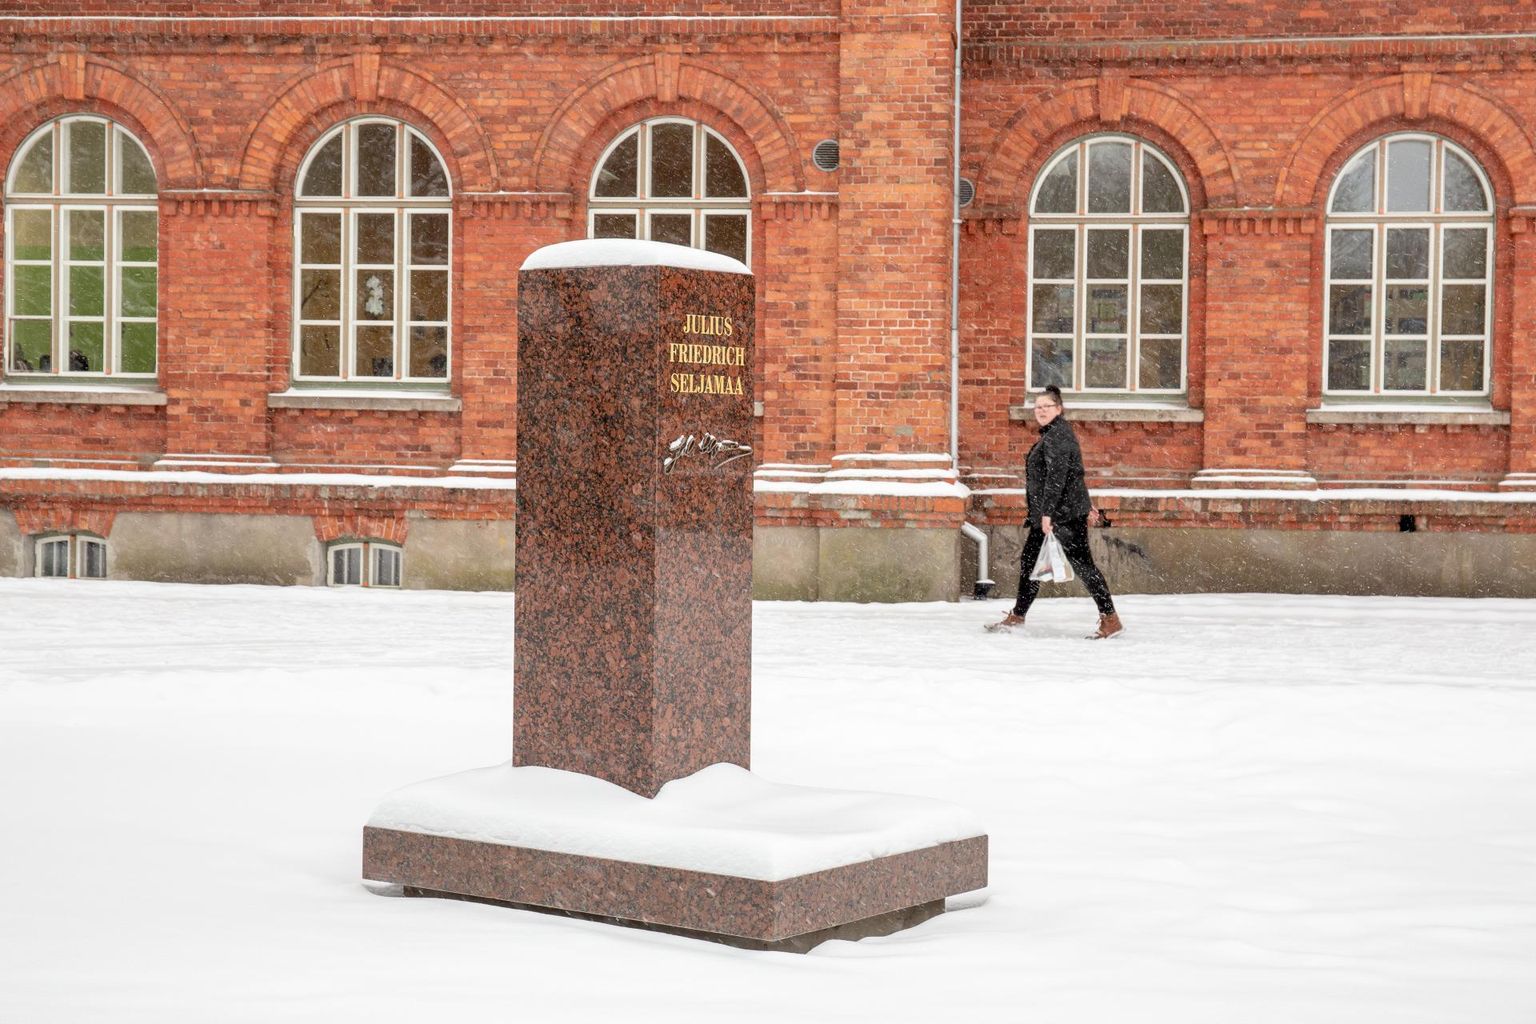 Sindi gümnaasiumi esisel platsil on paigas Julius Friedrich Seljamaa monumendi alus, avamine toimub 2. veebruaril.